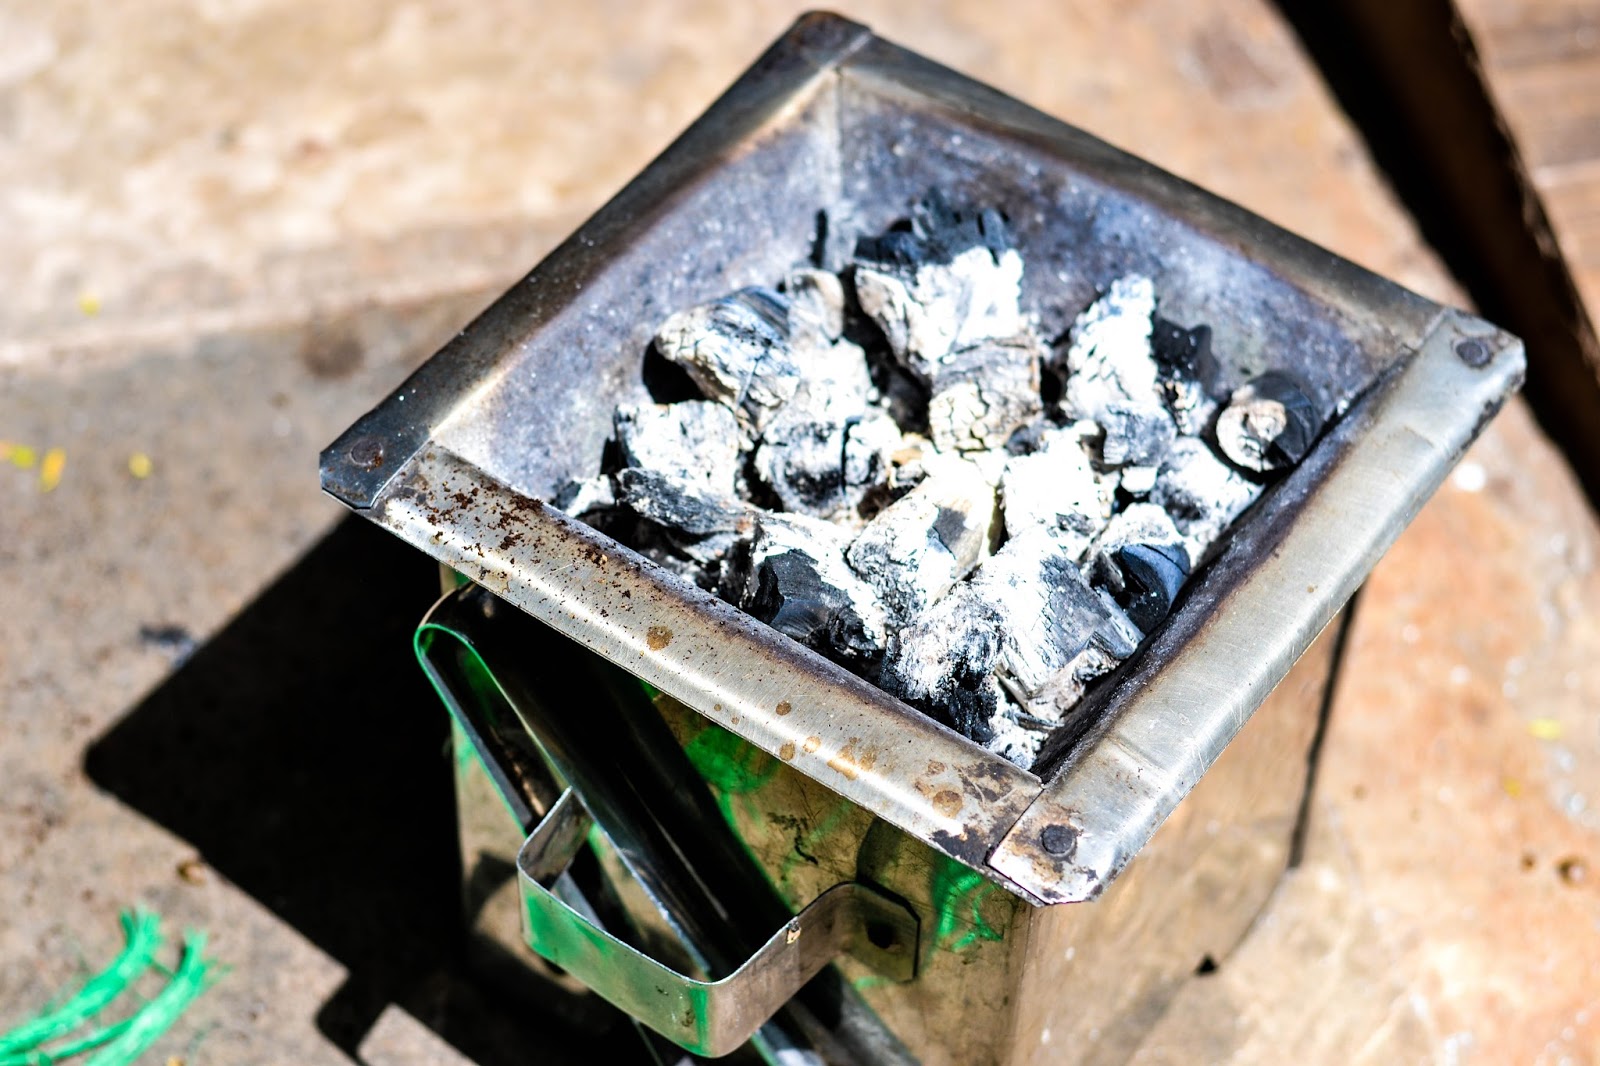 charcoal to roast ethiopian coffee